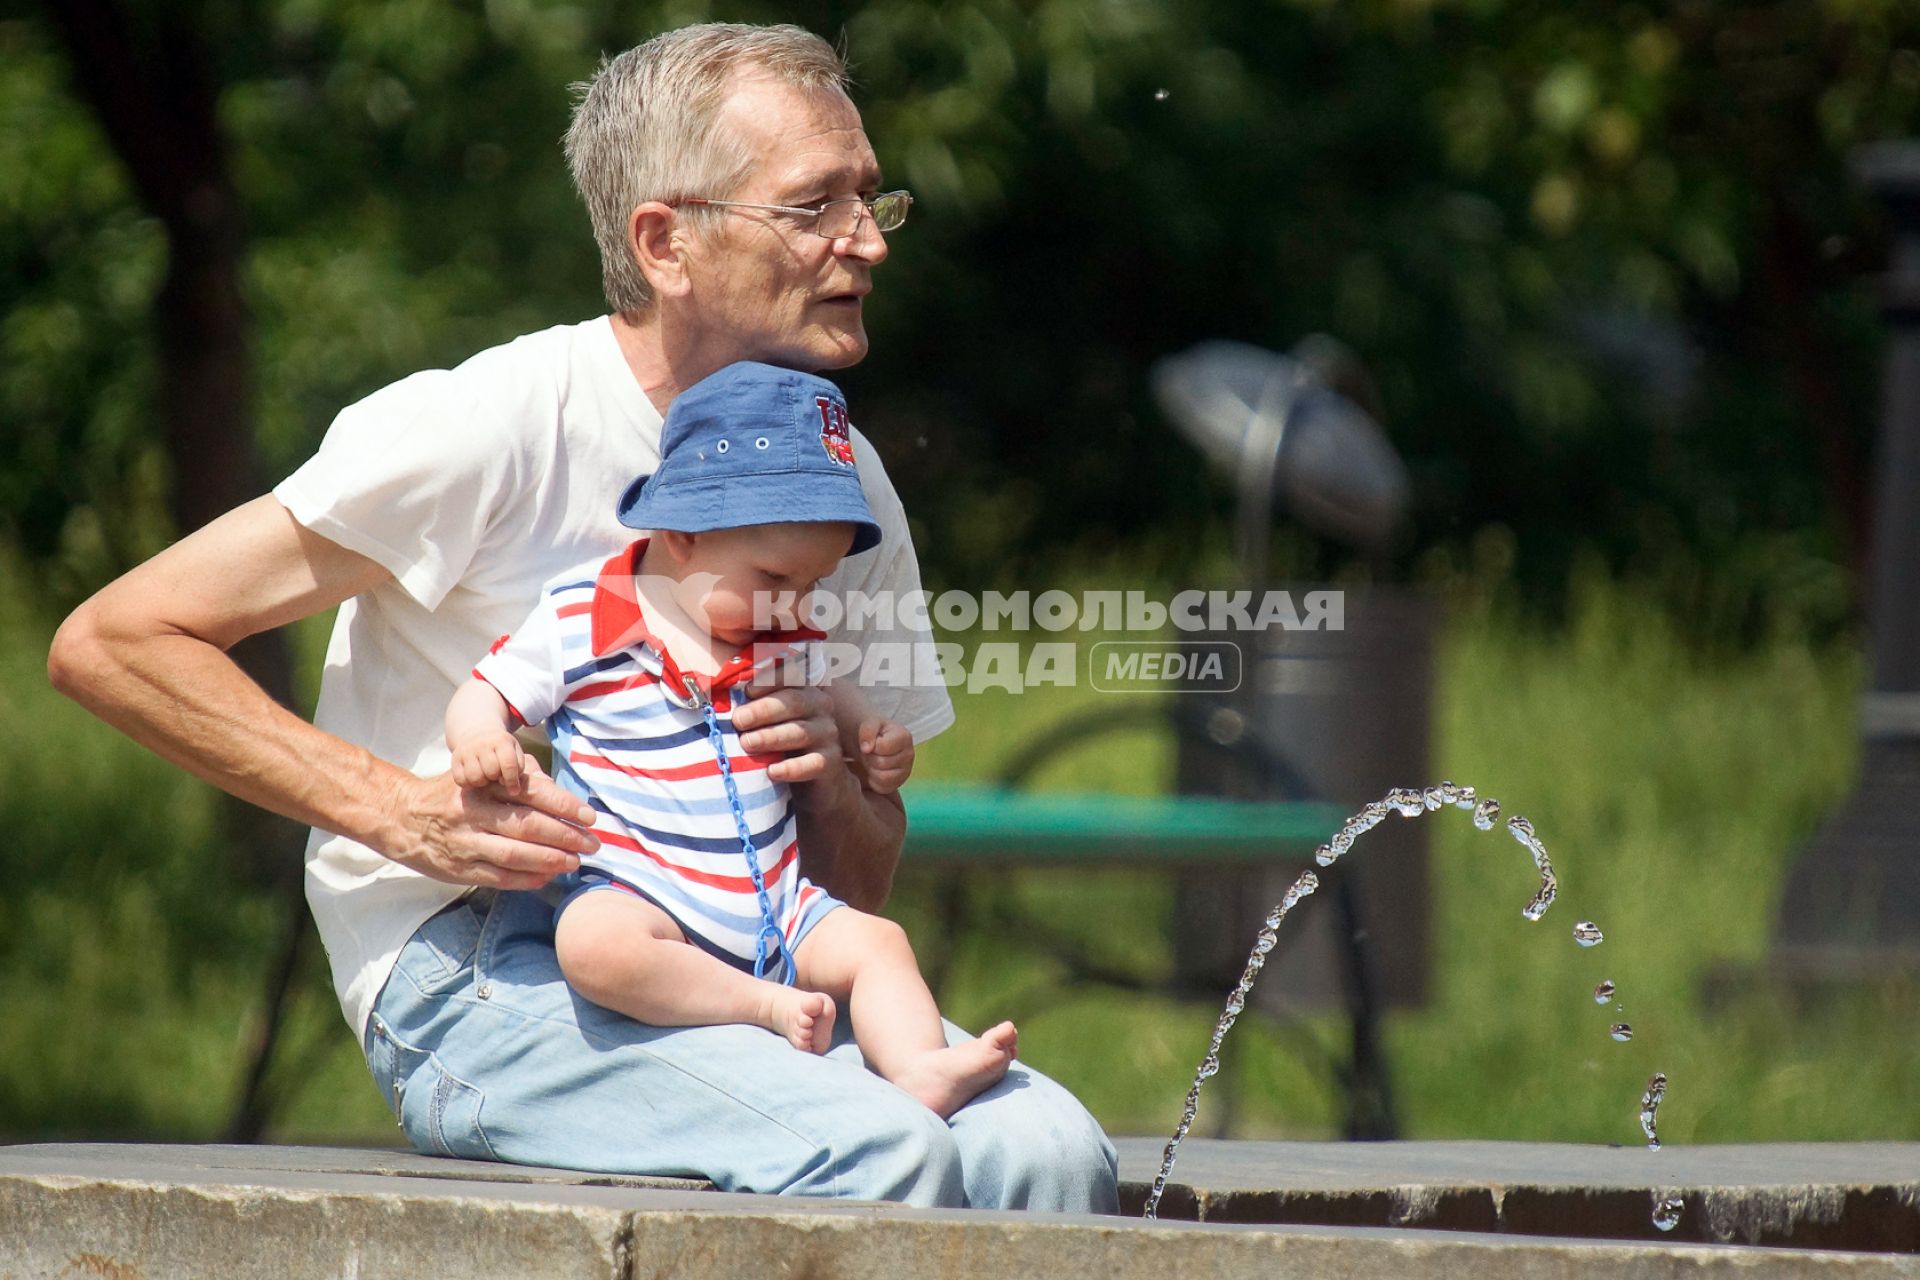 Ребенок, сидя на коленках у деда, наблюдает за струей воды в фонтане.